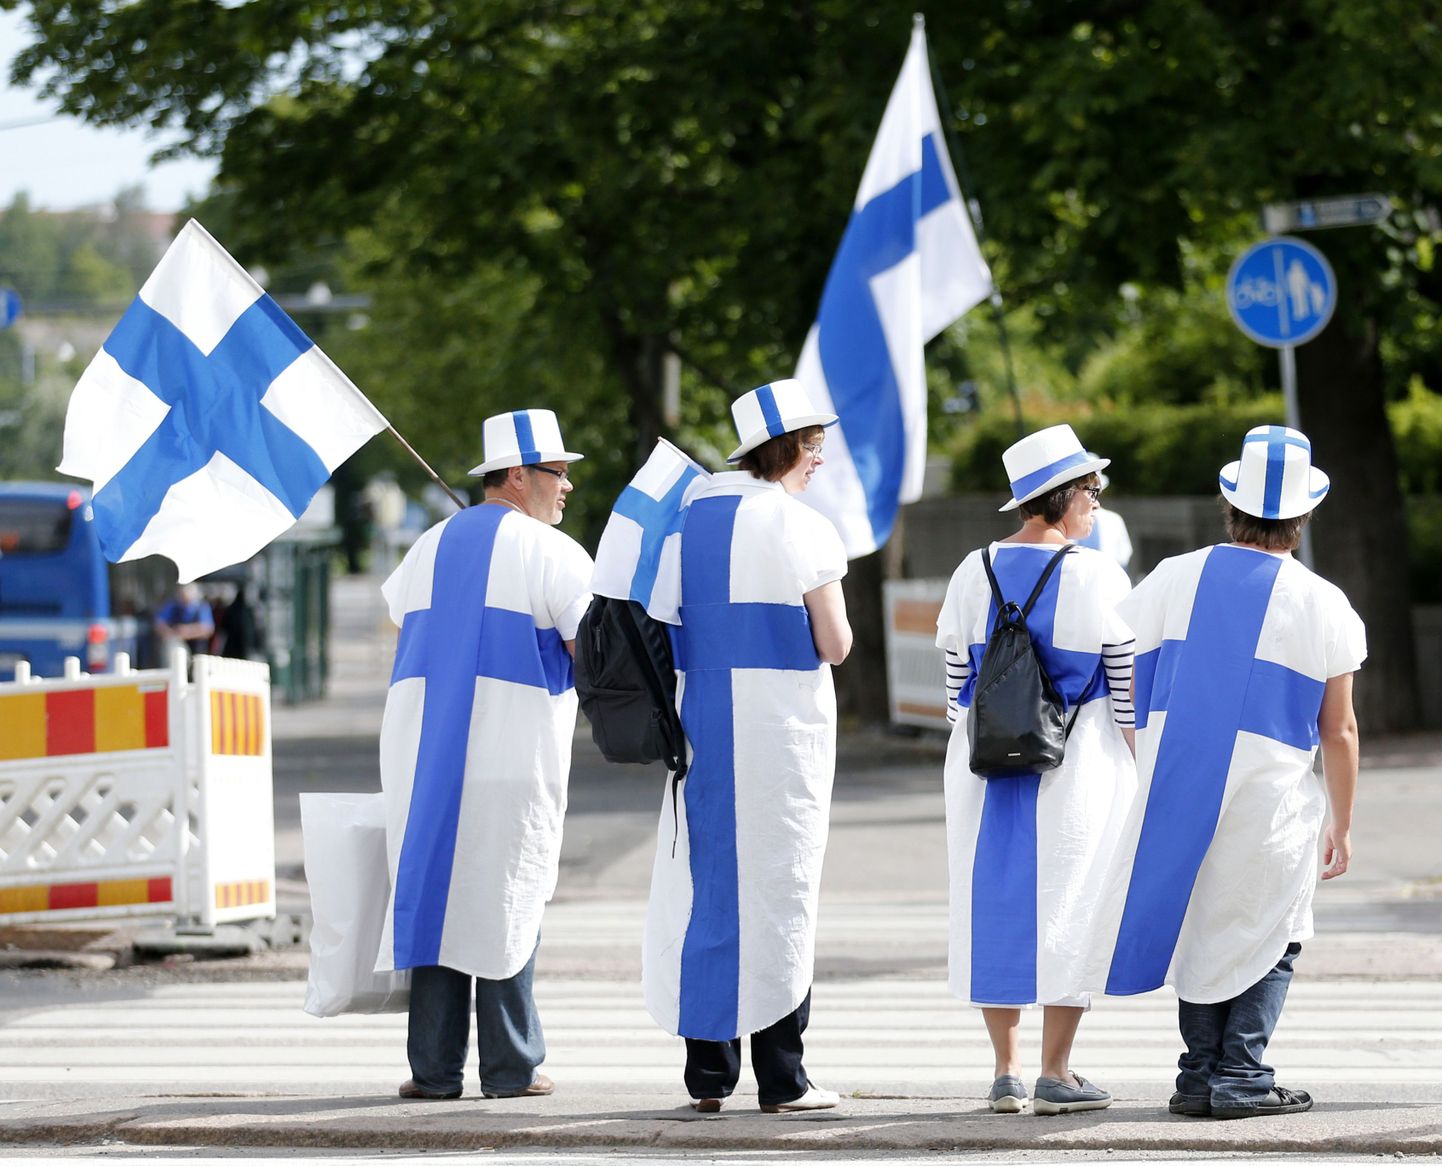 Soomest lahkuvad ettevõtjad võtavad sageli oma maksuvõlad kaaasa, väidab maksuamet.